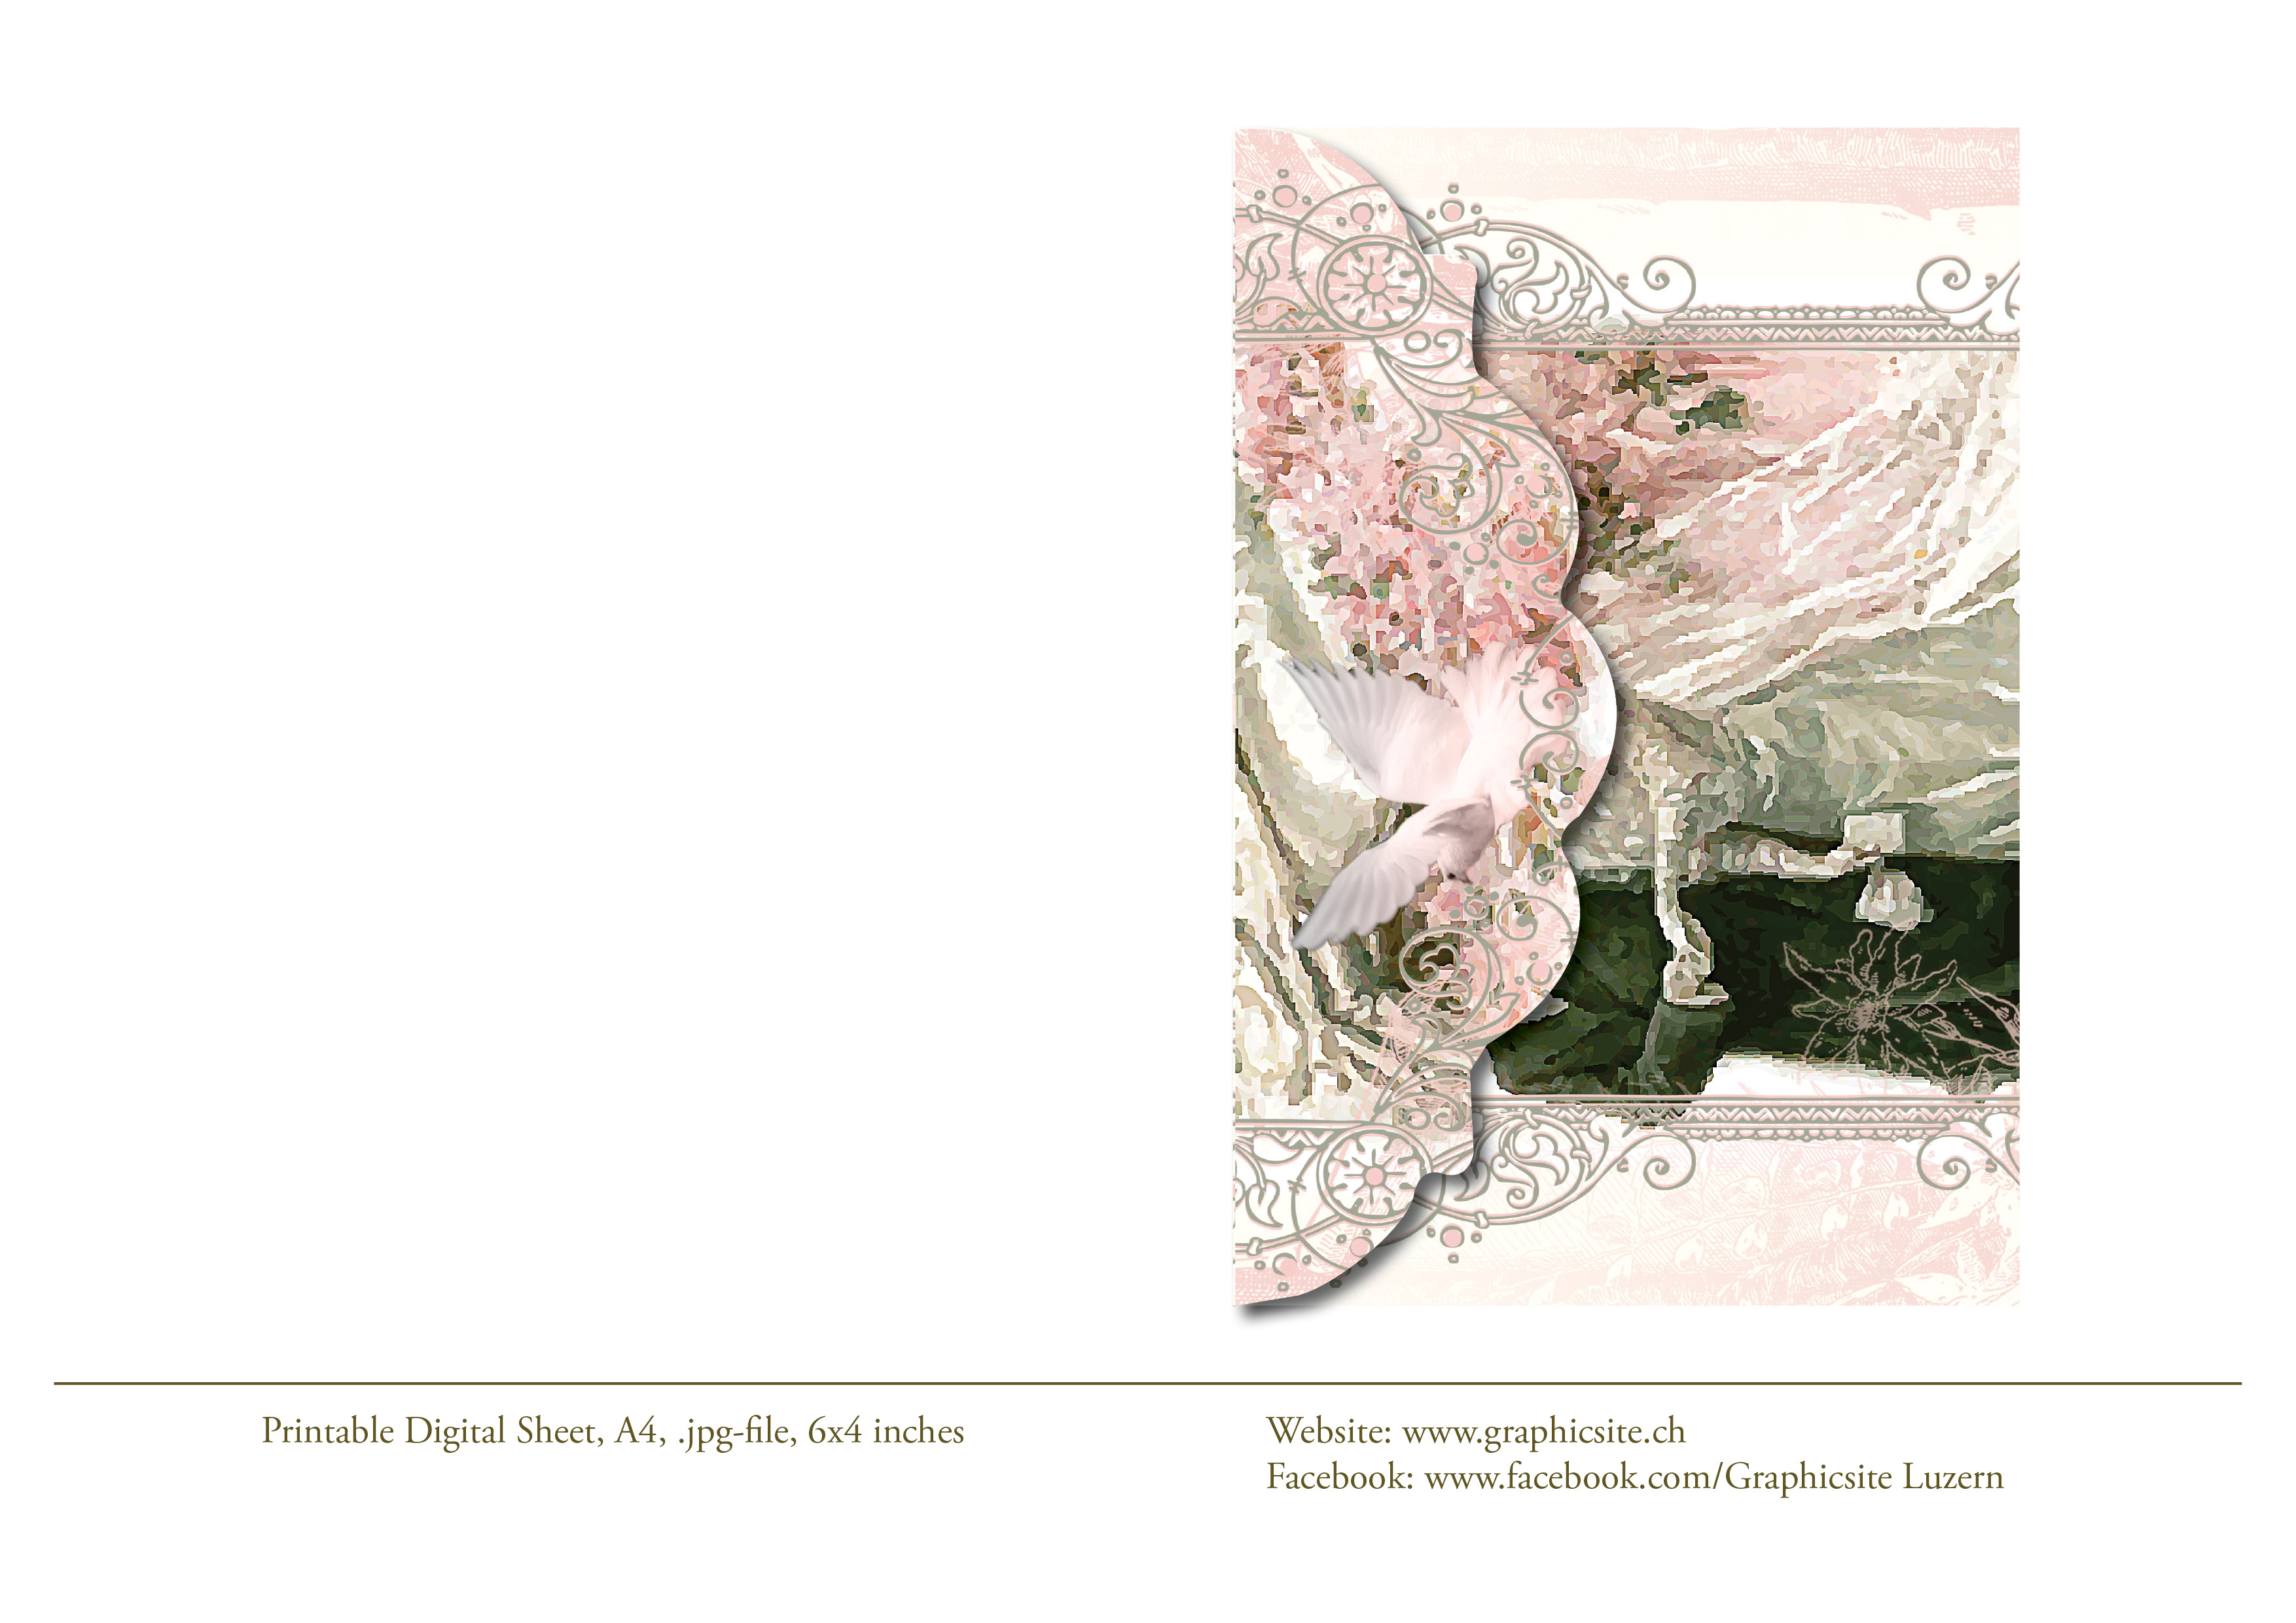 Karten selber drucken - Kuverts 6 x 4 - Hochzeit, Viktorianisch